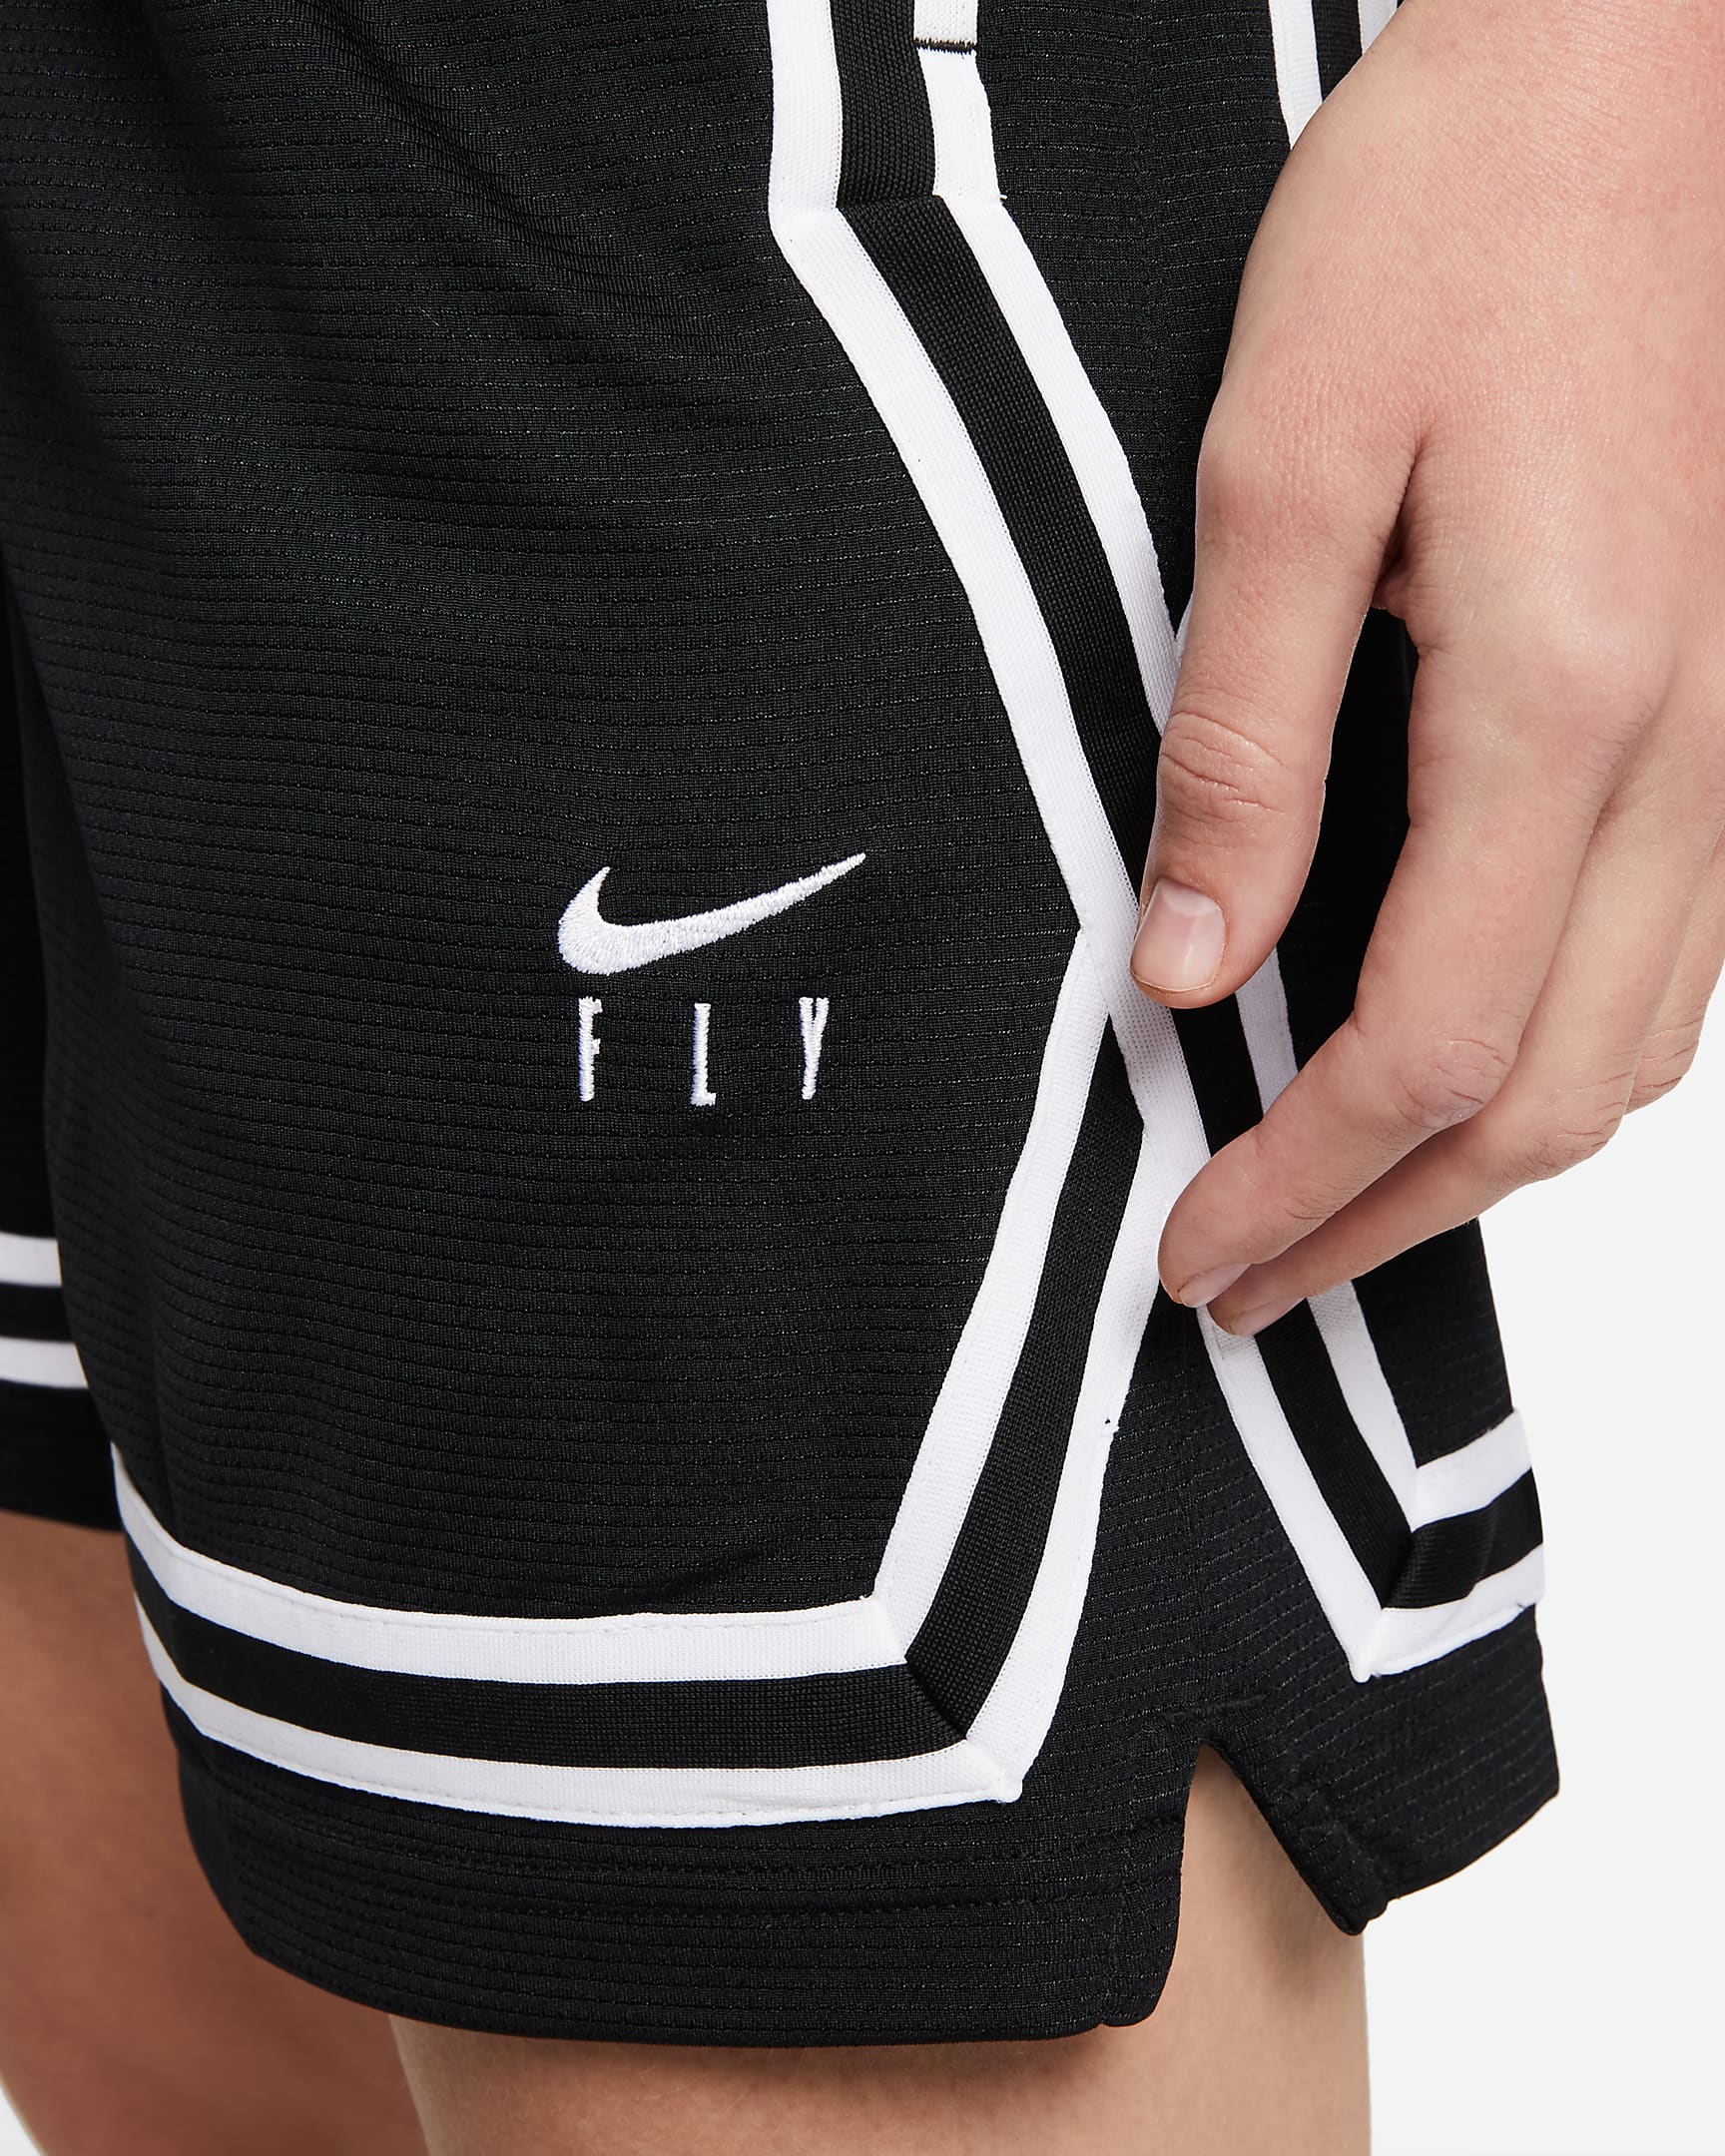 Nike Fly Crossover Women's Basketball Shorts. Nike UK